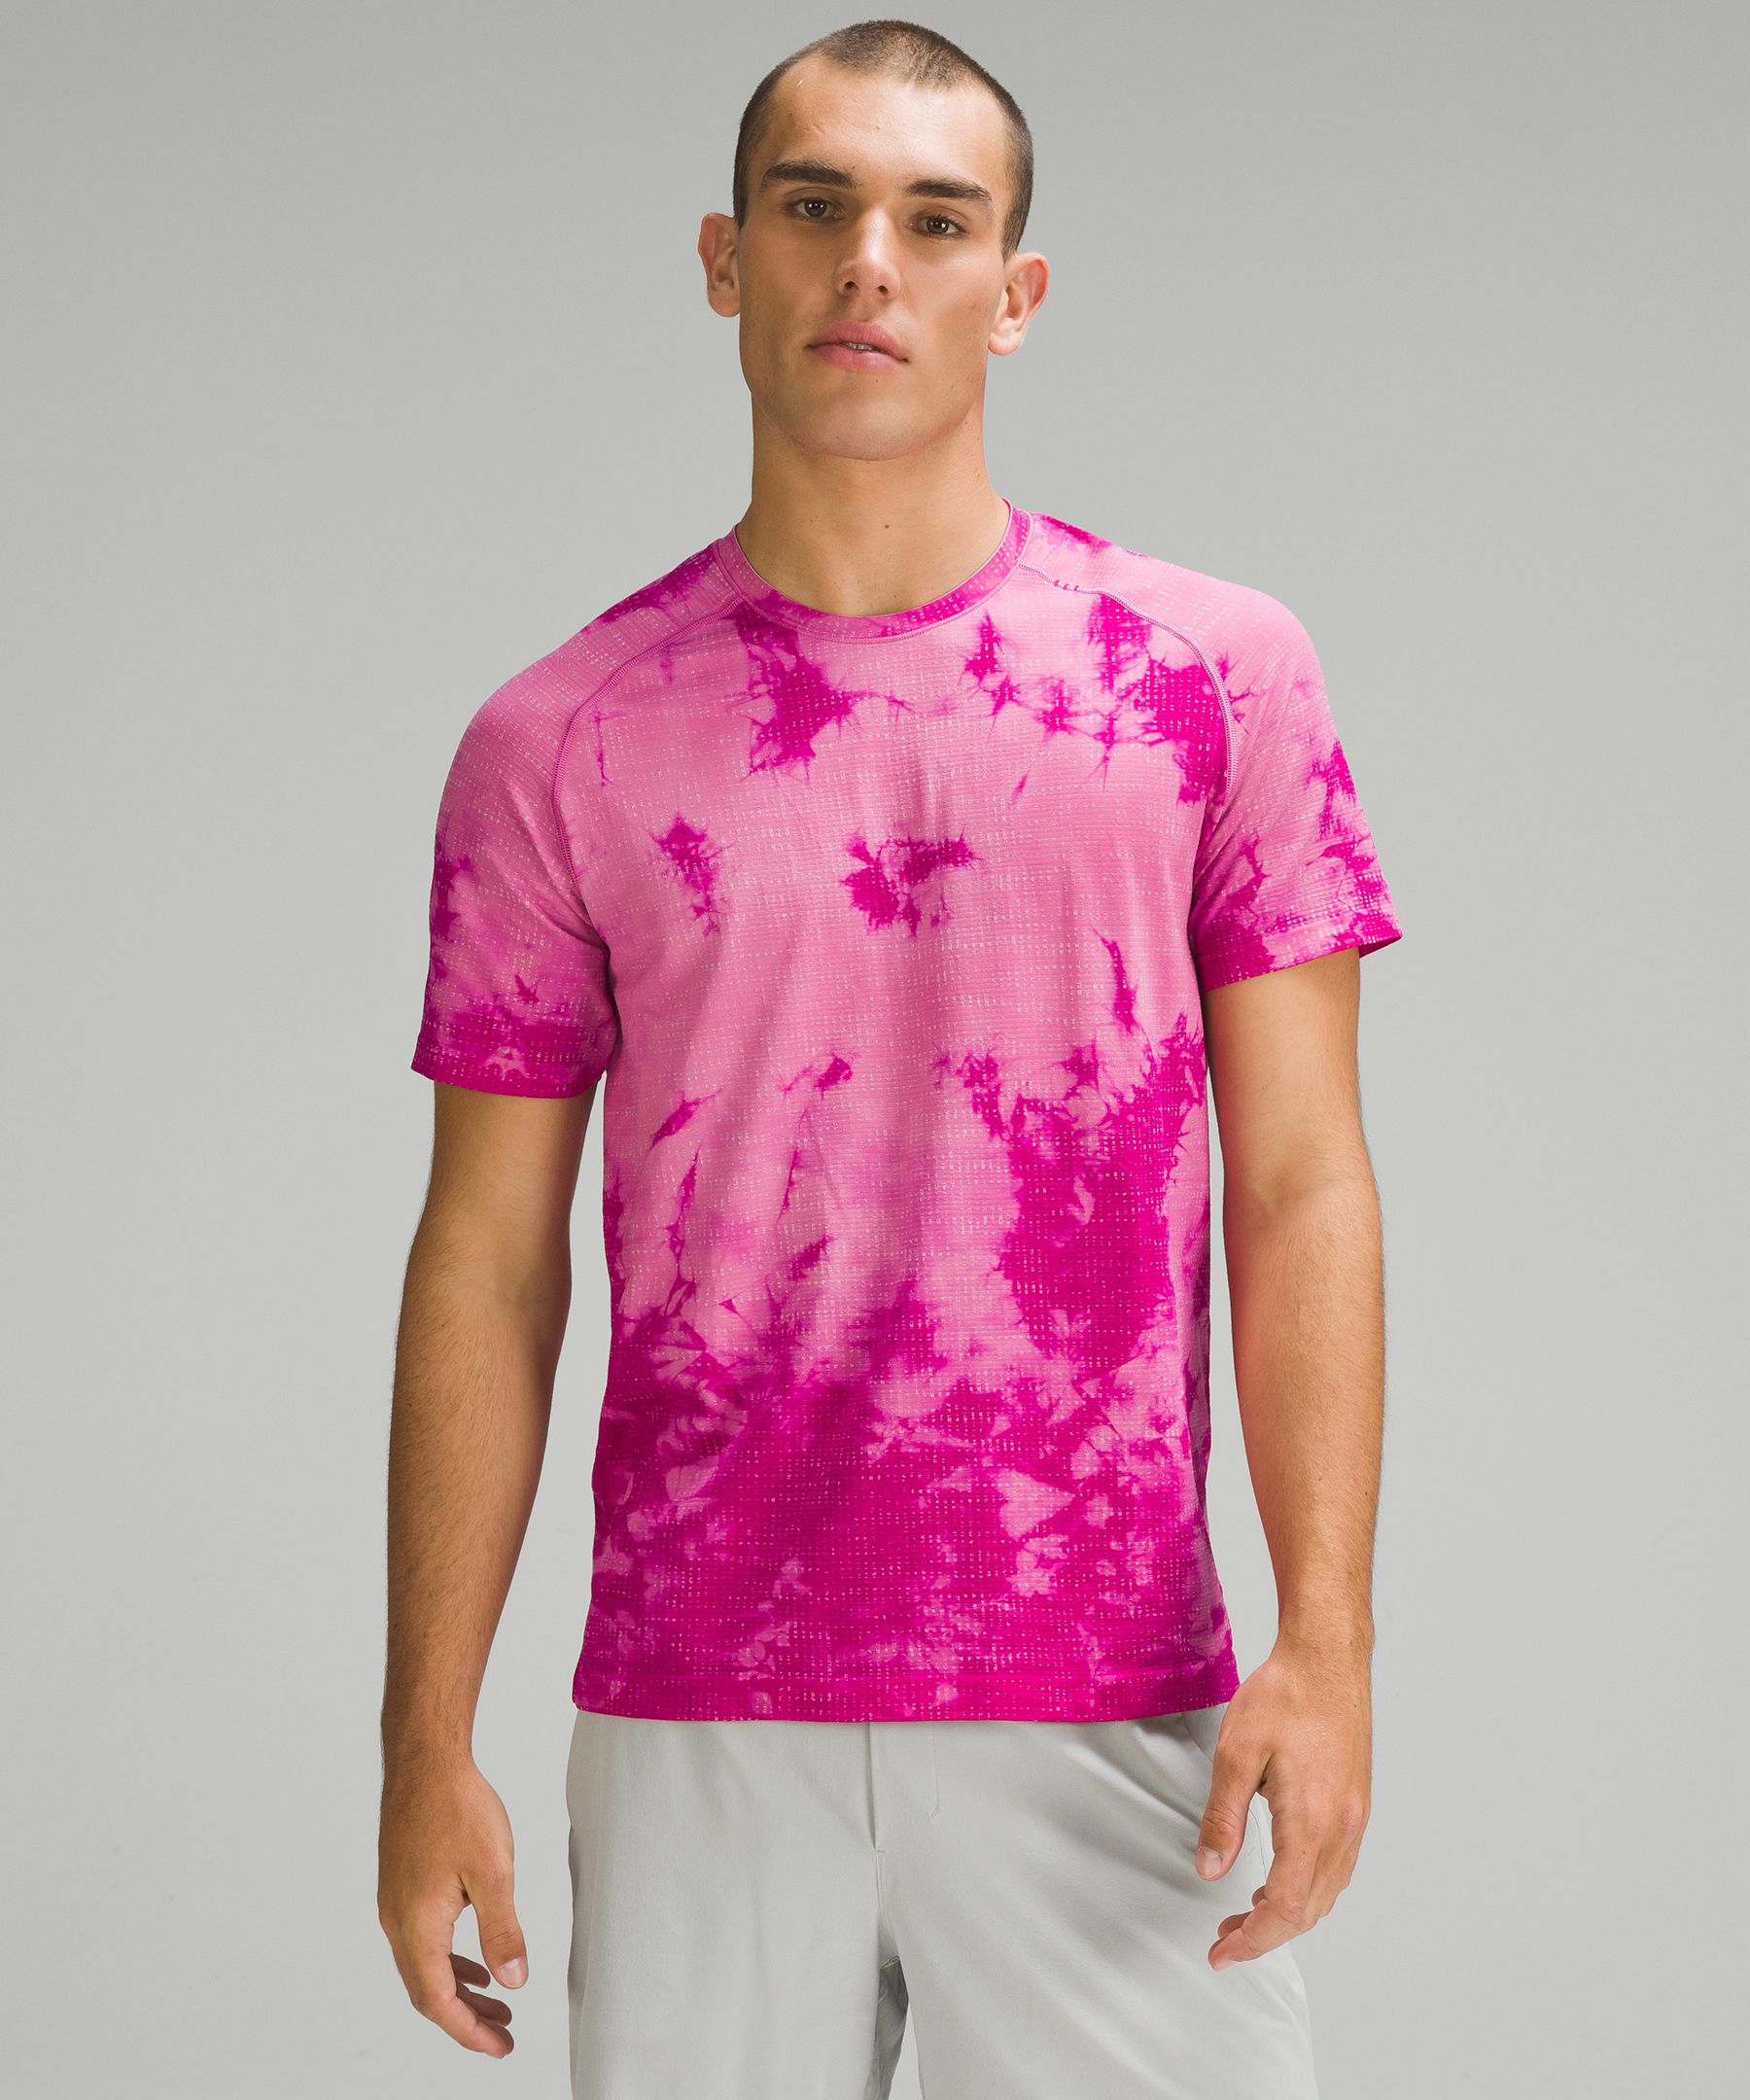 Lululemon Metal Vent Tech Short Sleeve Shirt 2.0 In Pink